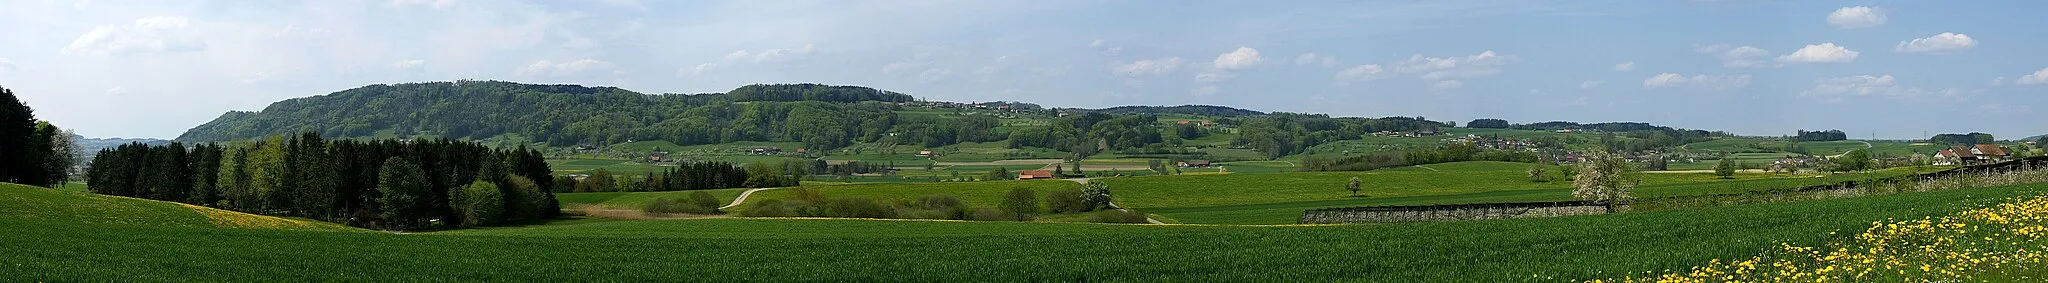 Photo showing: Blick ins Tal der Lauche mit dem Imenberg im Hintergrund. Auf der linken Vorderkante thront das Schloss Sonnenberg. Rechts die Dörfer Wetzikon TG und Zezikon.
Panorama aus 7 Querformataufnahmen vom 4. Mai 2008 15 Uhr. EXIF Daten der ersten Aufnahme: 04.05.2008 15 Uhr 1/1000 s - f/8 - ISO 200 - 75 mm KB. Aufnahmestandort: An der Kirchstrasse Lommis - Tägerschen (Isenegg). 528 m - 718889 / 263998

(47° 30′ 57.49″ N, 9° 1′ 1.46″ E  (47.515969°, 9.017072°))